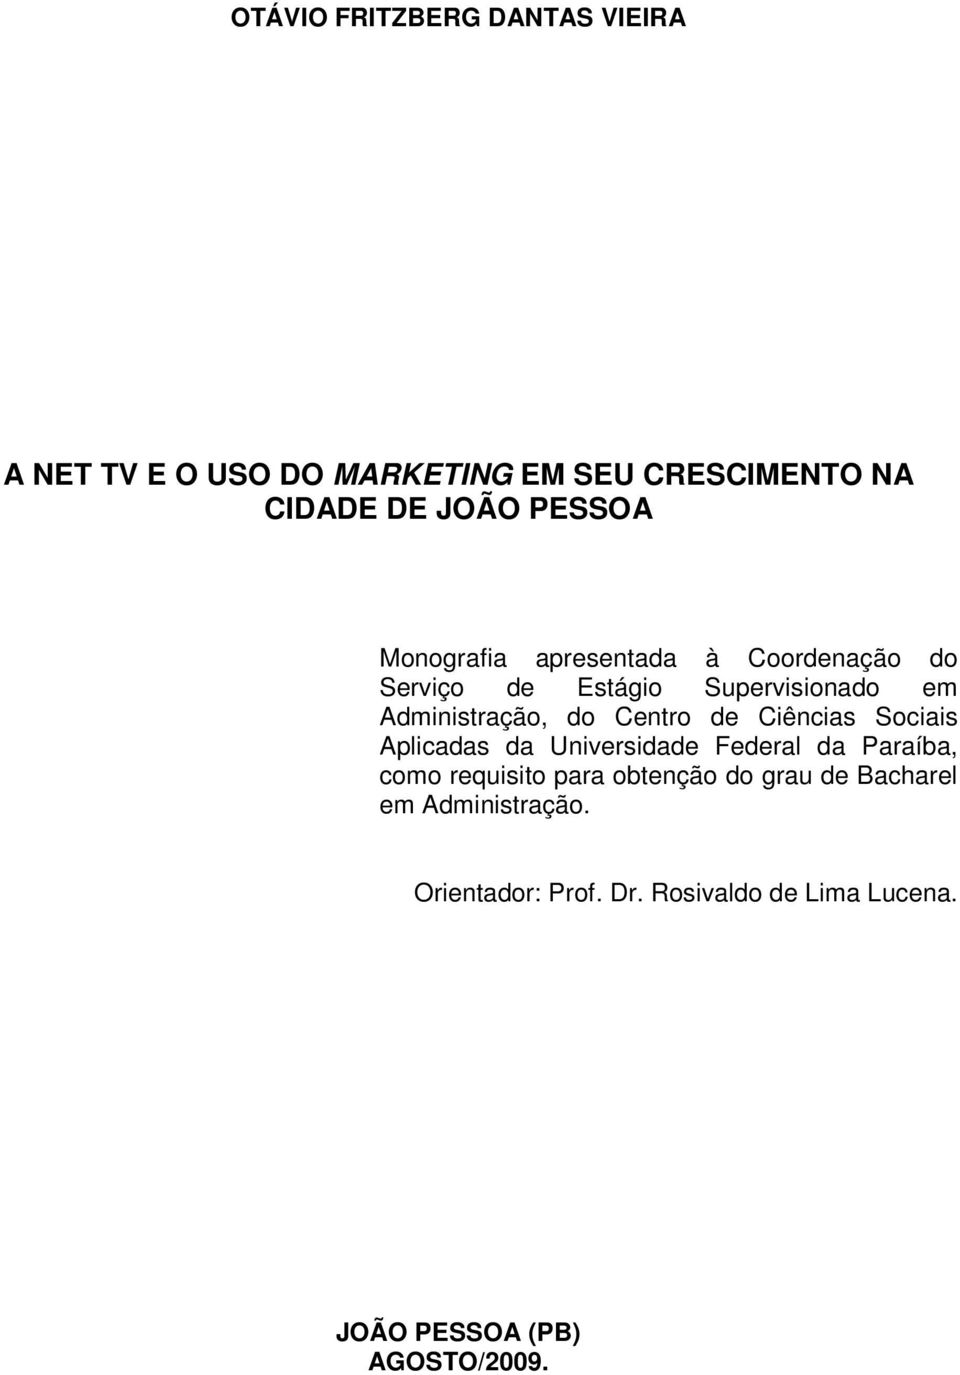 Ciências Sociais Aplicadas da Universidade Federal da Paraíba, como requisito para obtenção do grau de